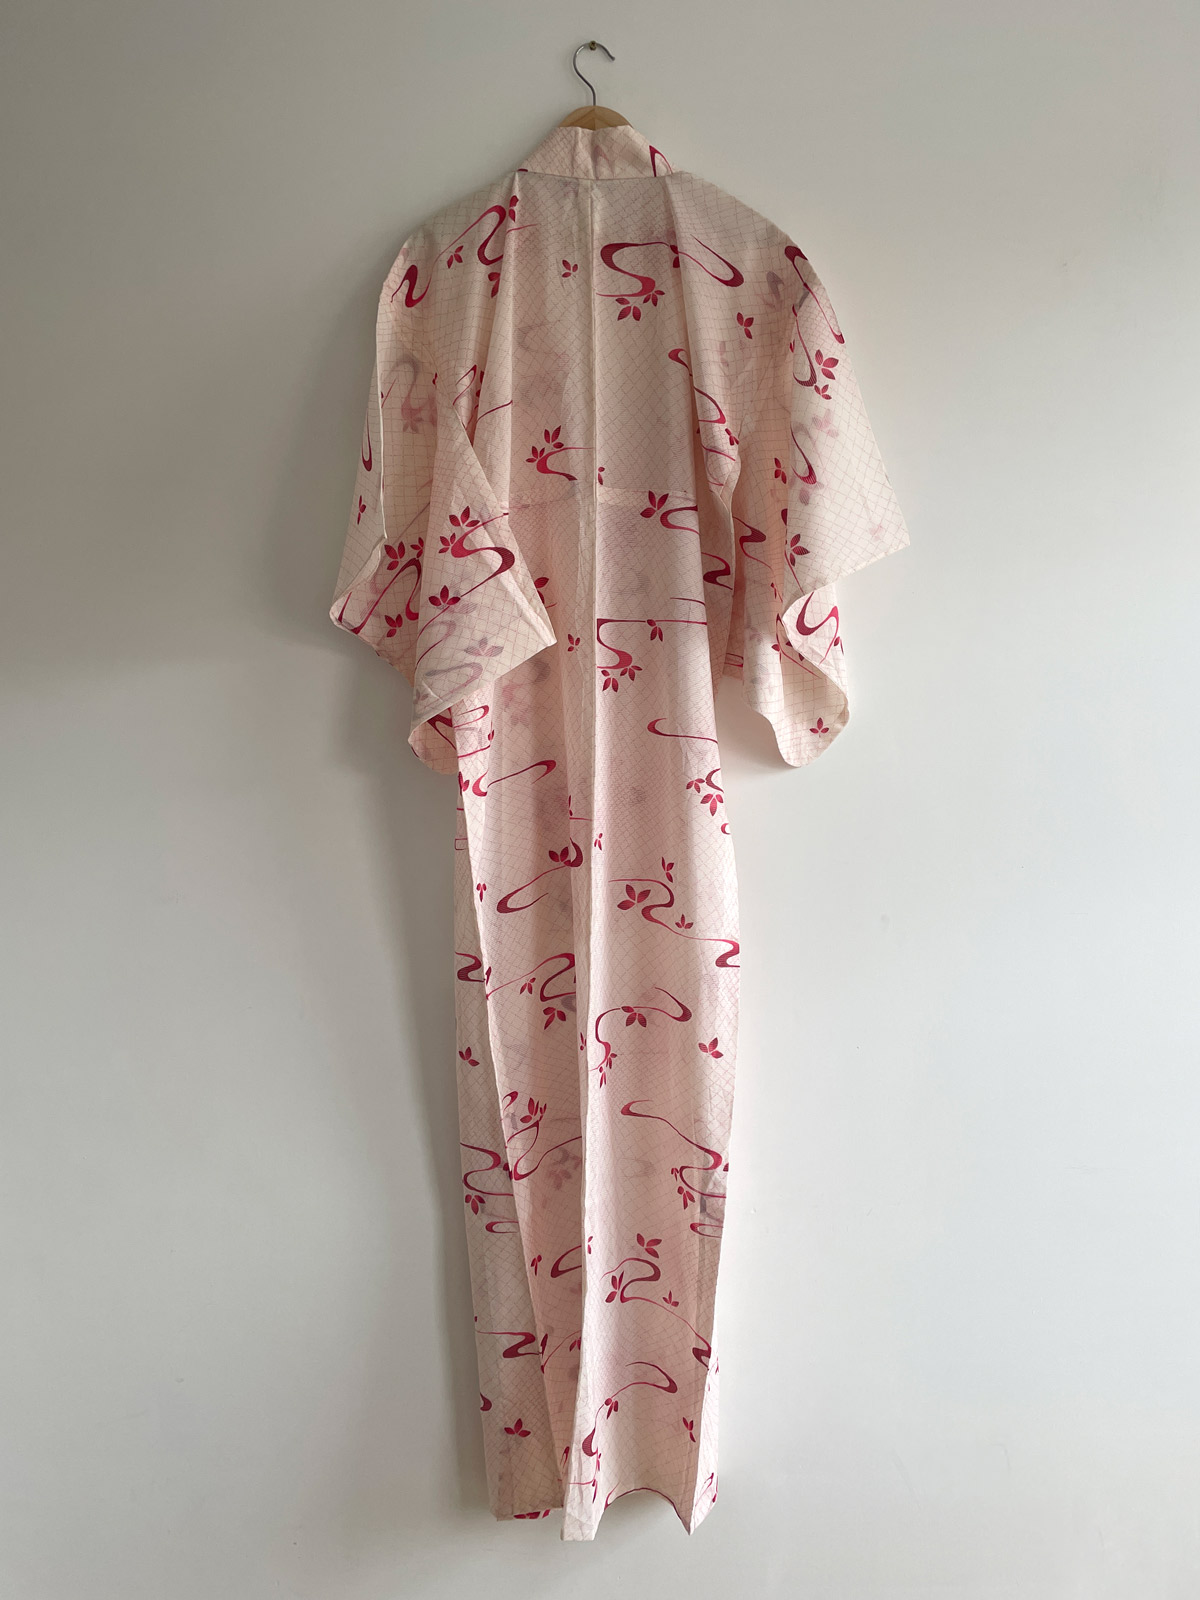 Kurenai – summer kimono with design of red swirls